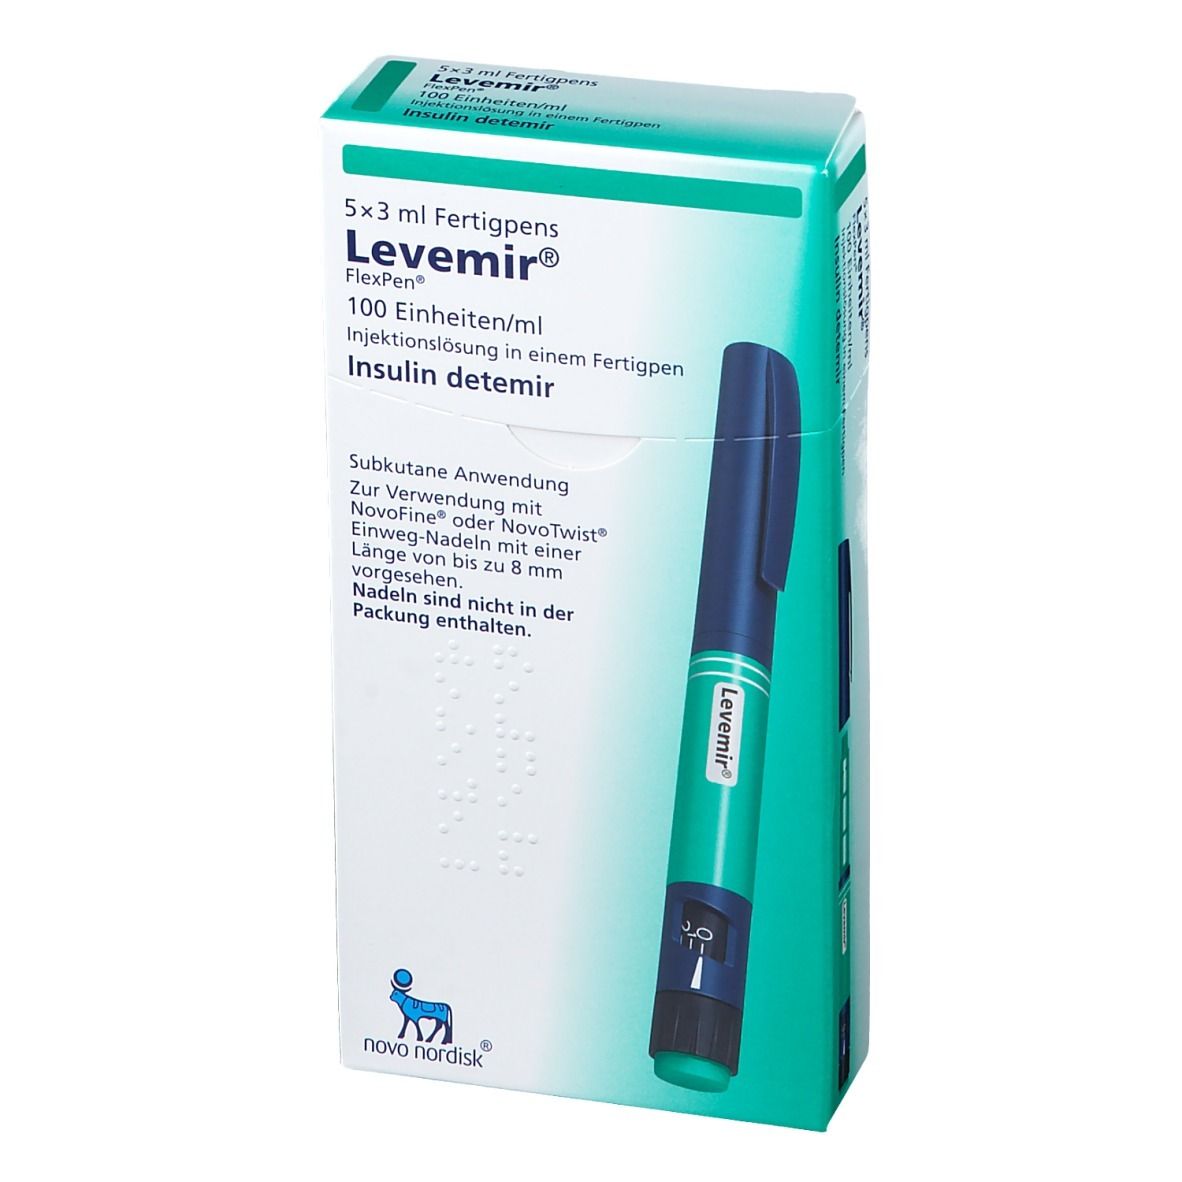 Levemir® FlexPen® 100 Einheiten/ml